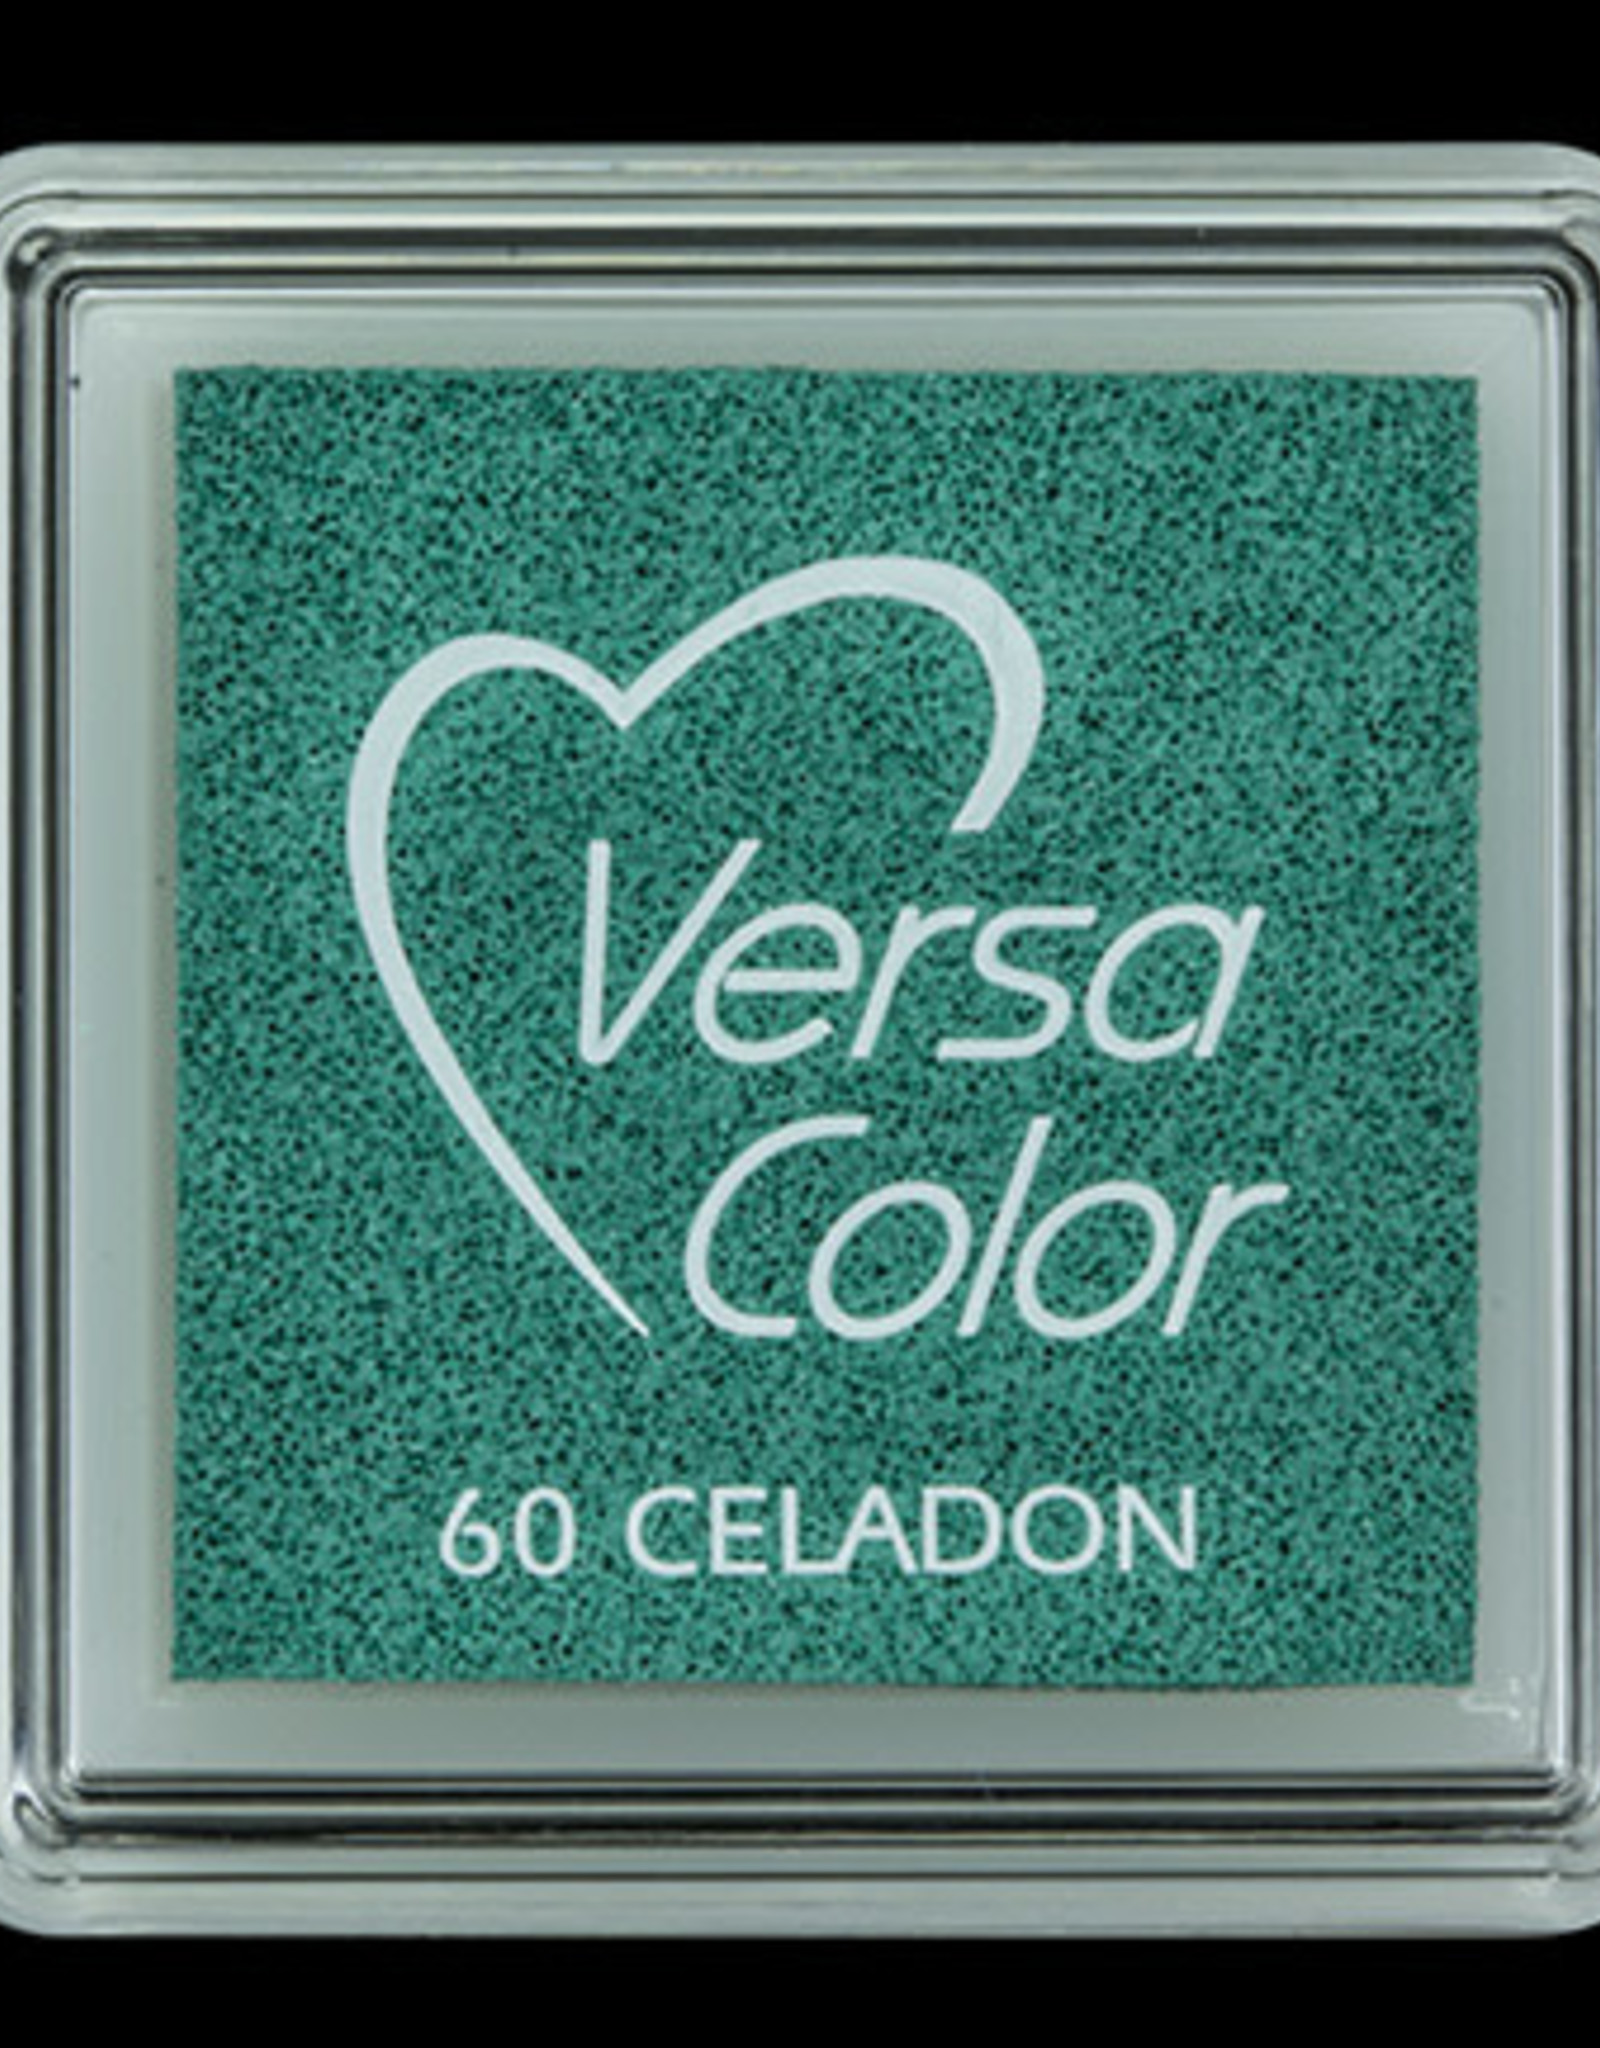 versacolor Versacolor Celadon 60